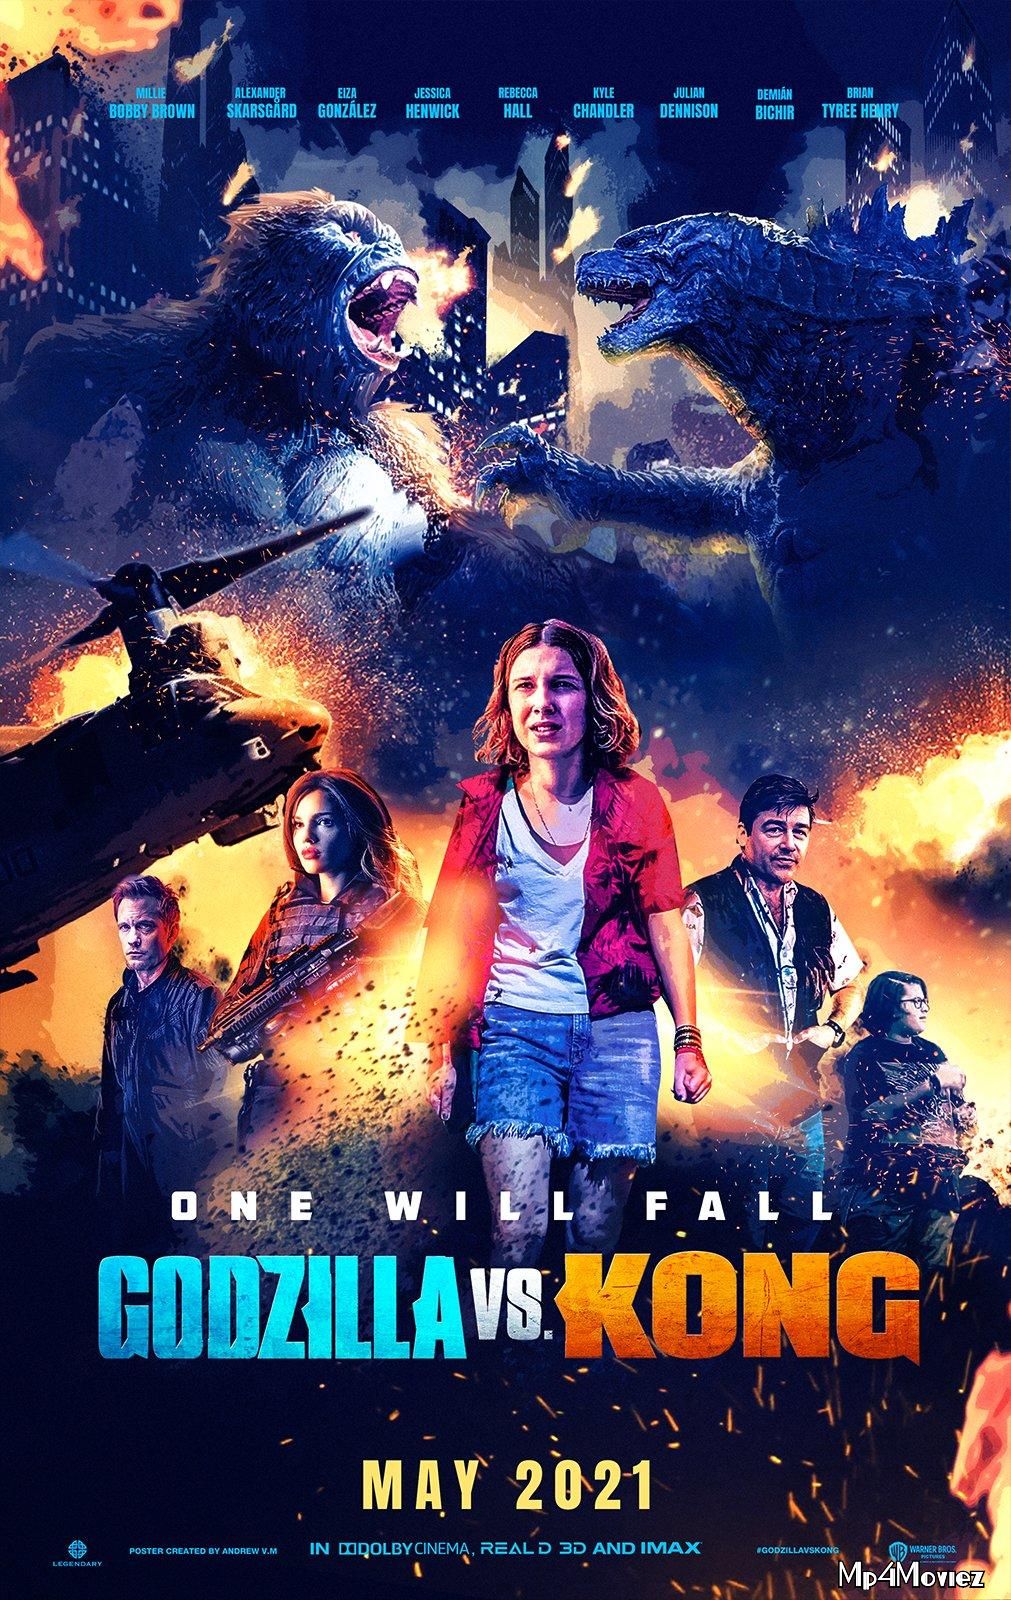 Godzilla vs Kong (2021) Hindi Dubbed HDRip download full movie